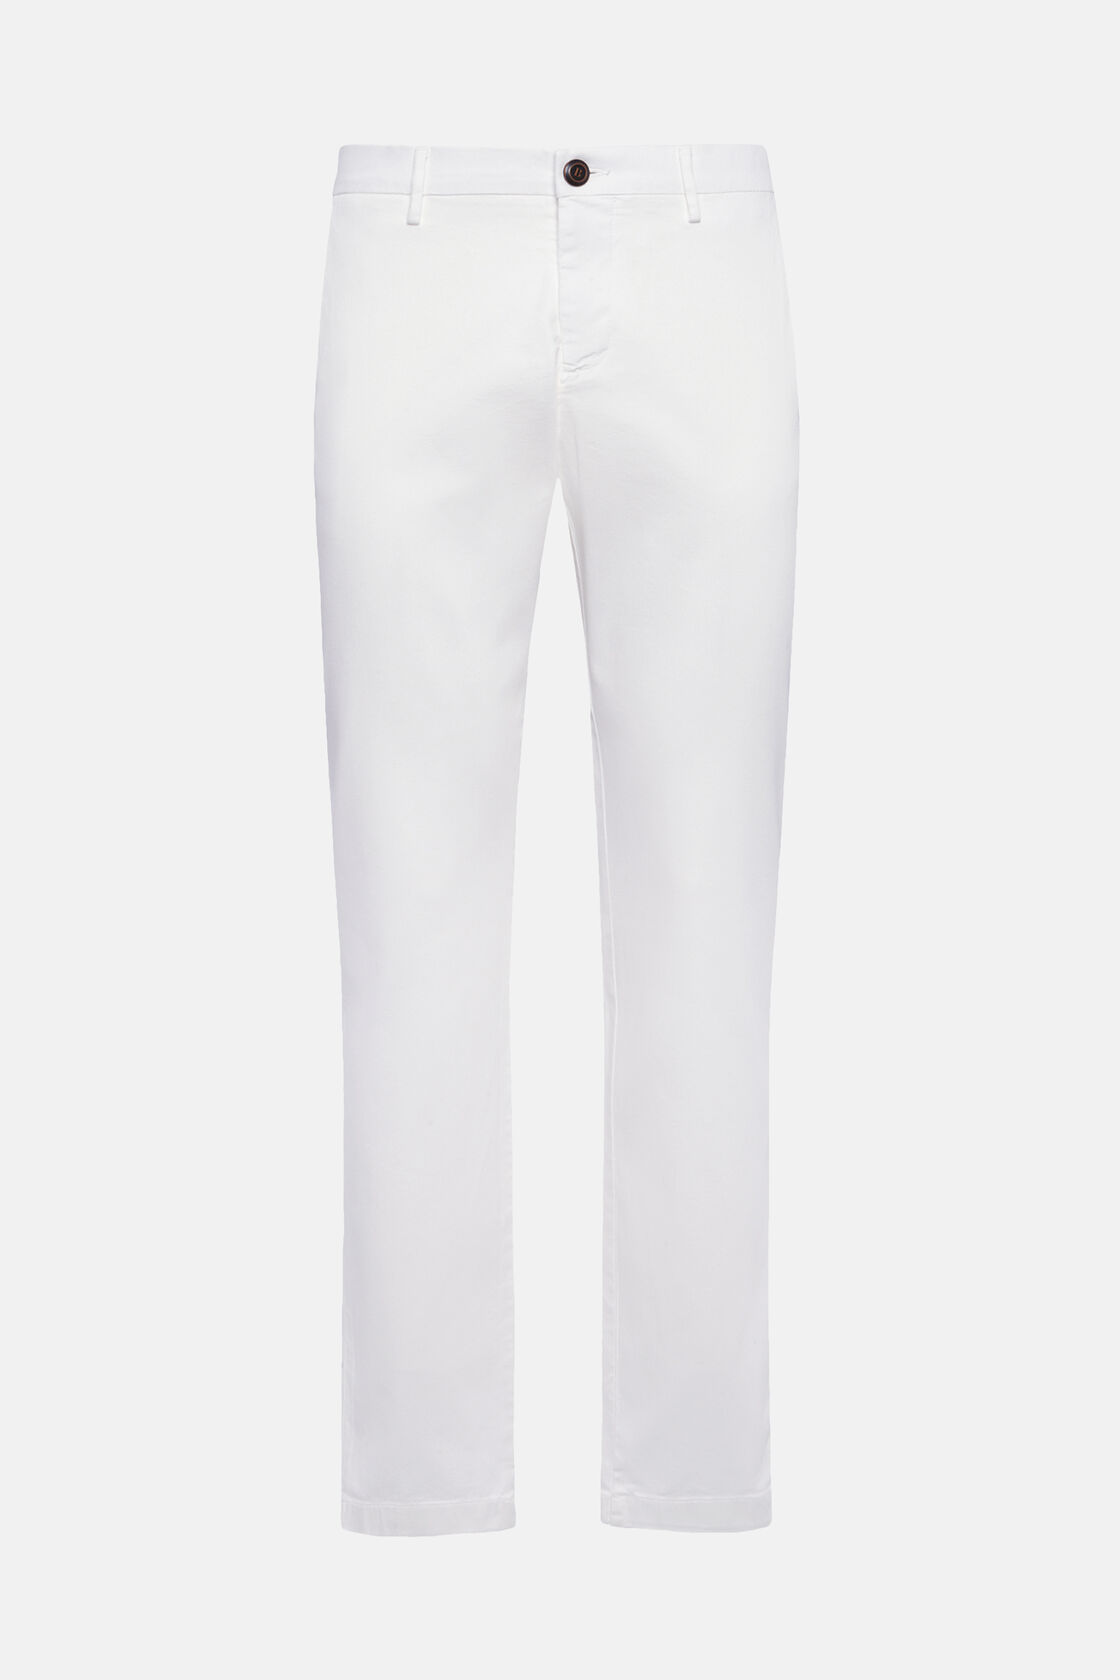 Pantaloni In Cotone Tencel Elasticizzato, Bianco, hi-res